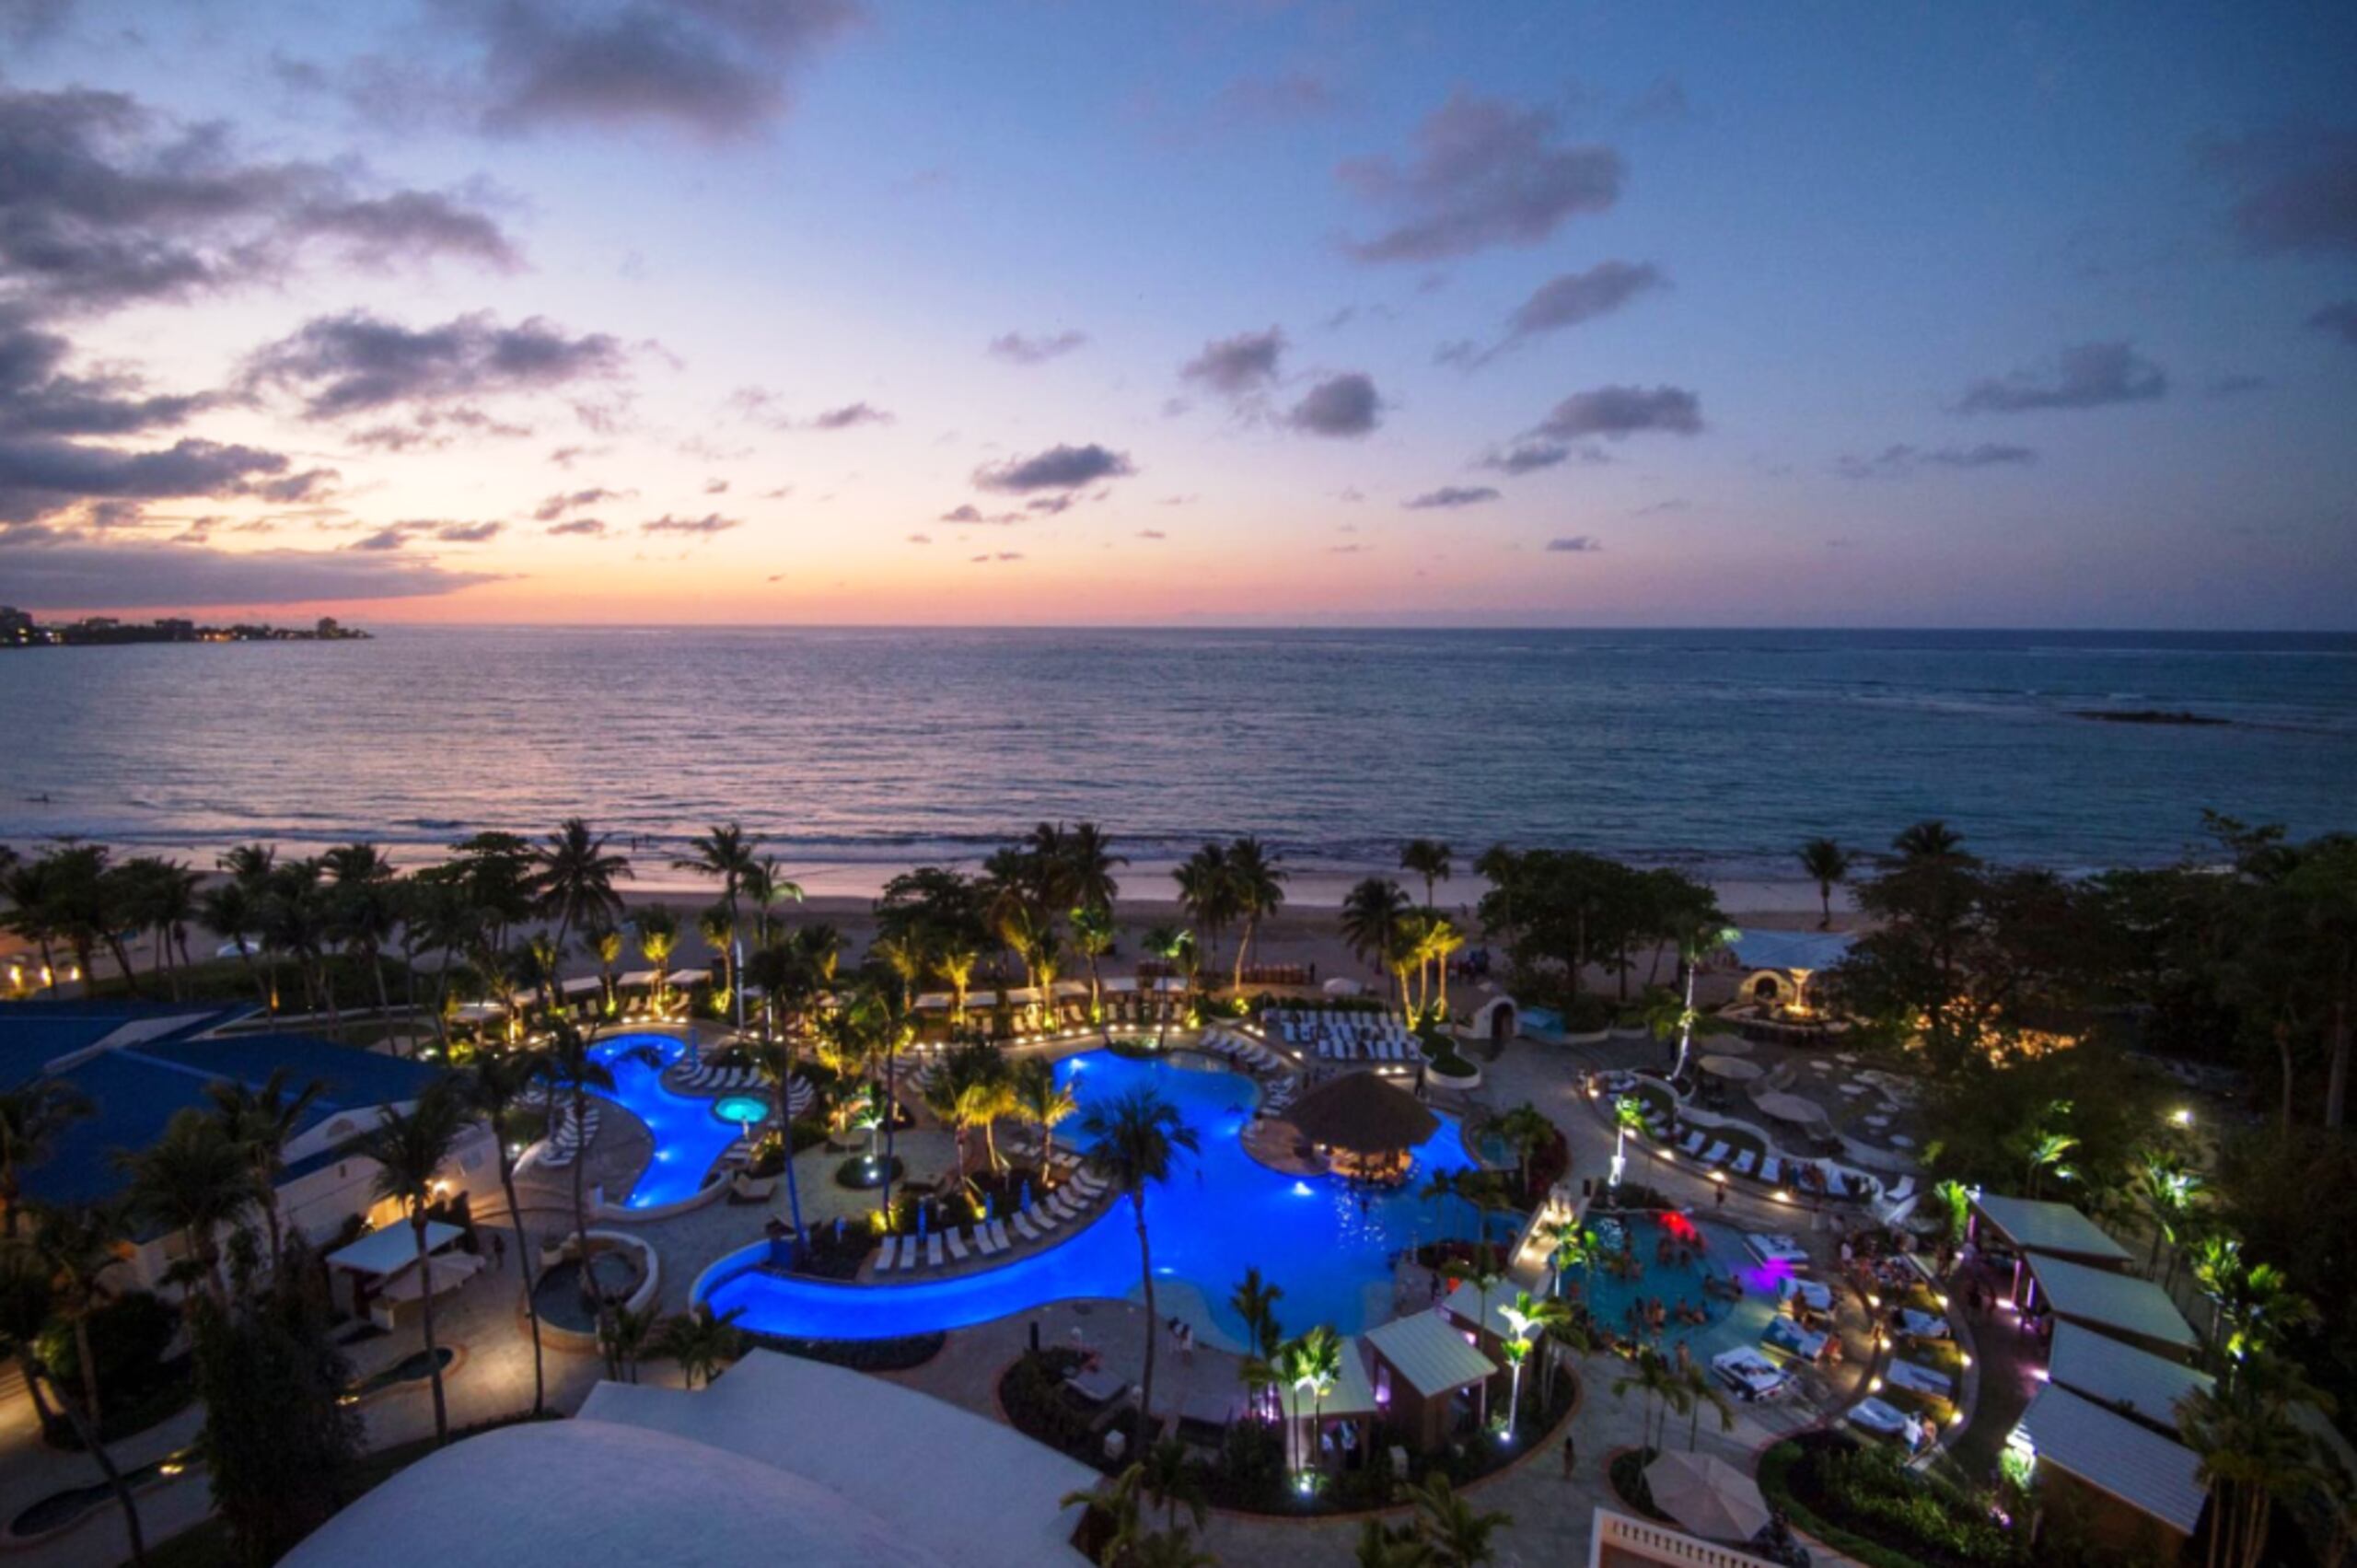 El San Juan Beach Club está ubicado en el prestigioso Fairmont El San Juan Hotel.